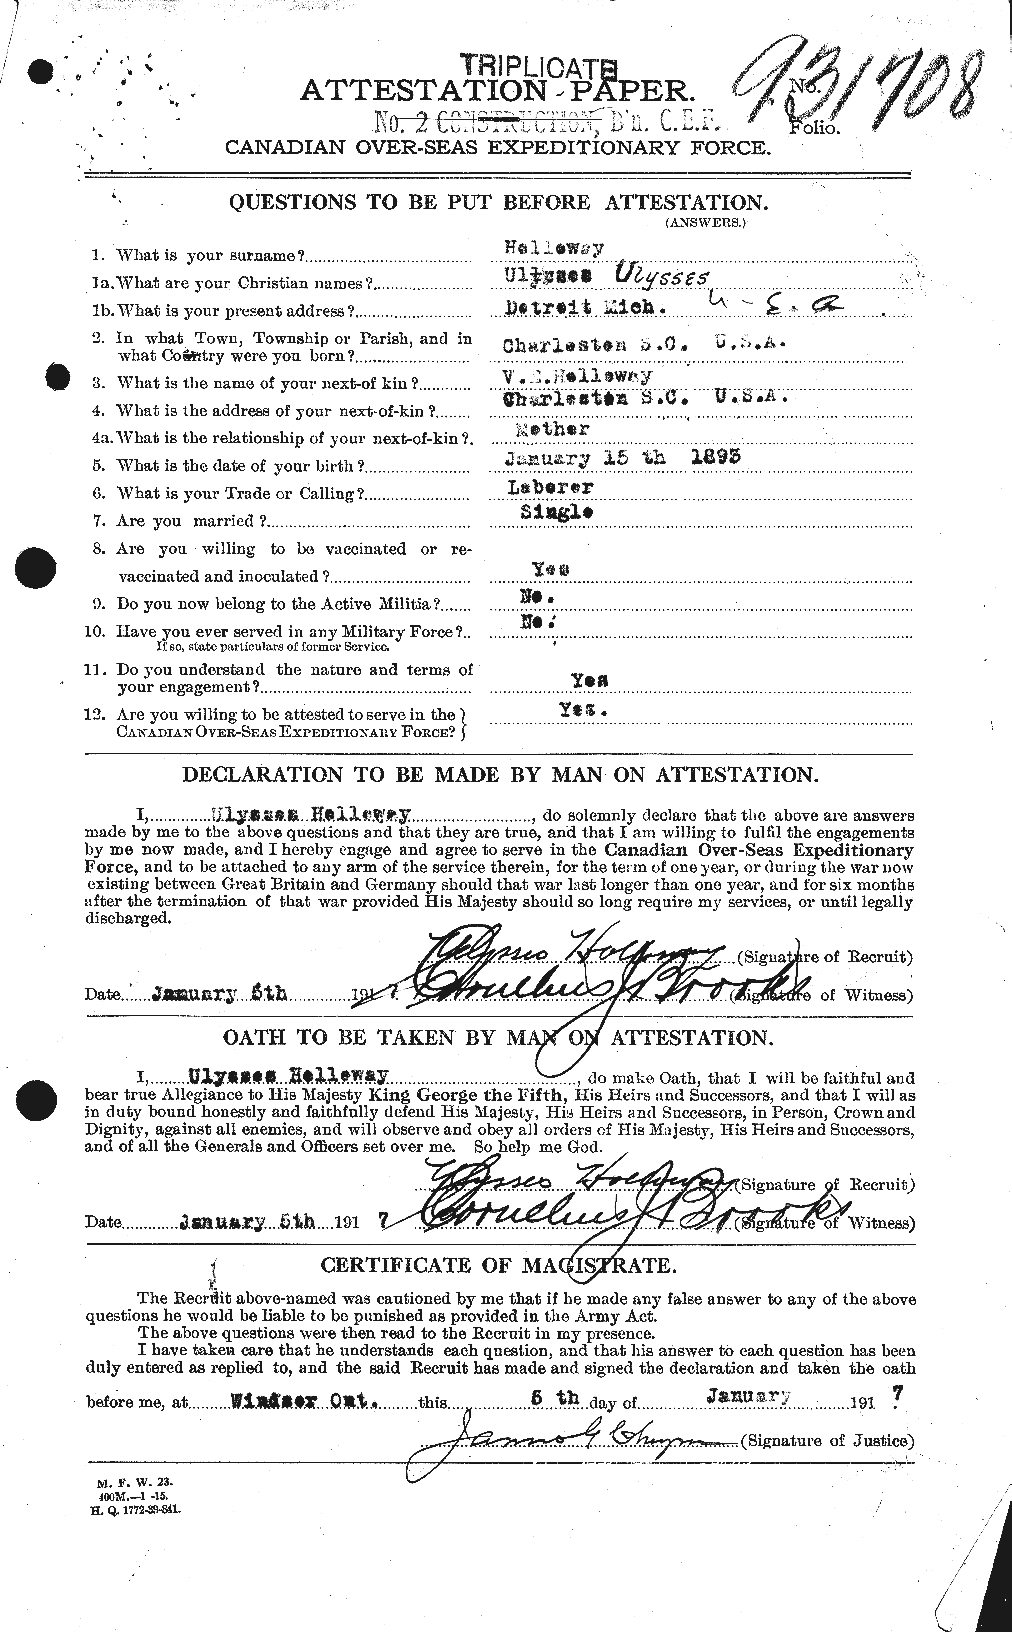 Dossiers du Personnel de la Première Guerre mondiale - CEC 398390a